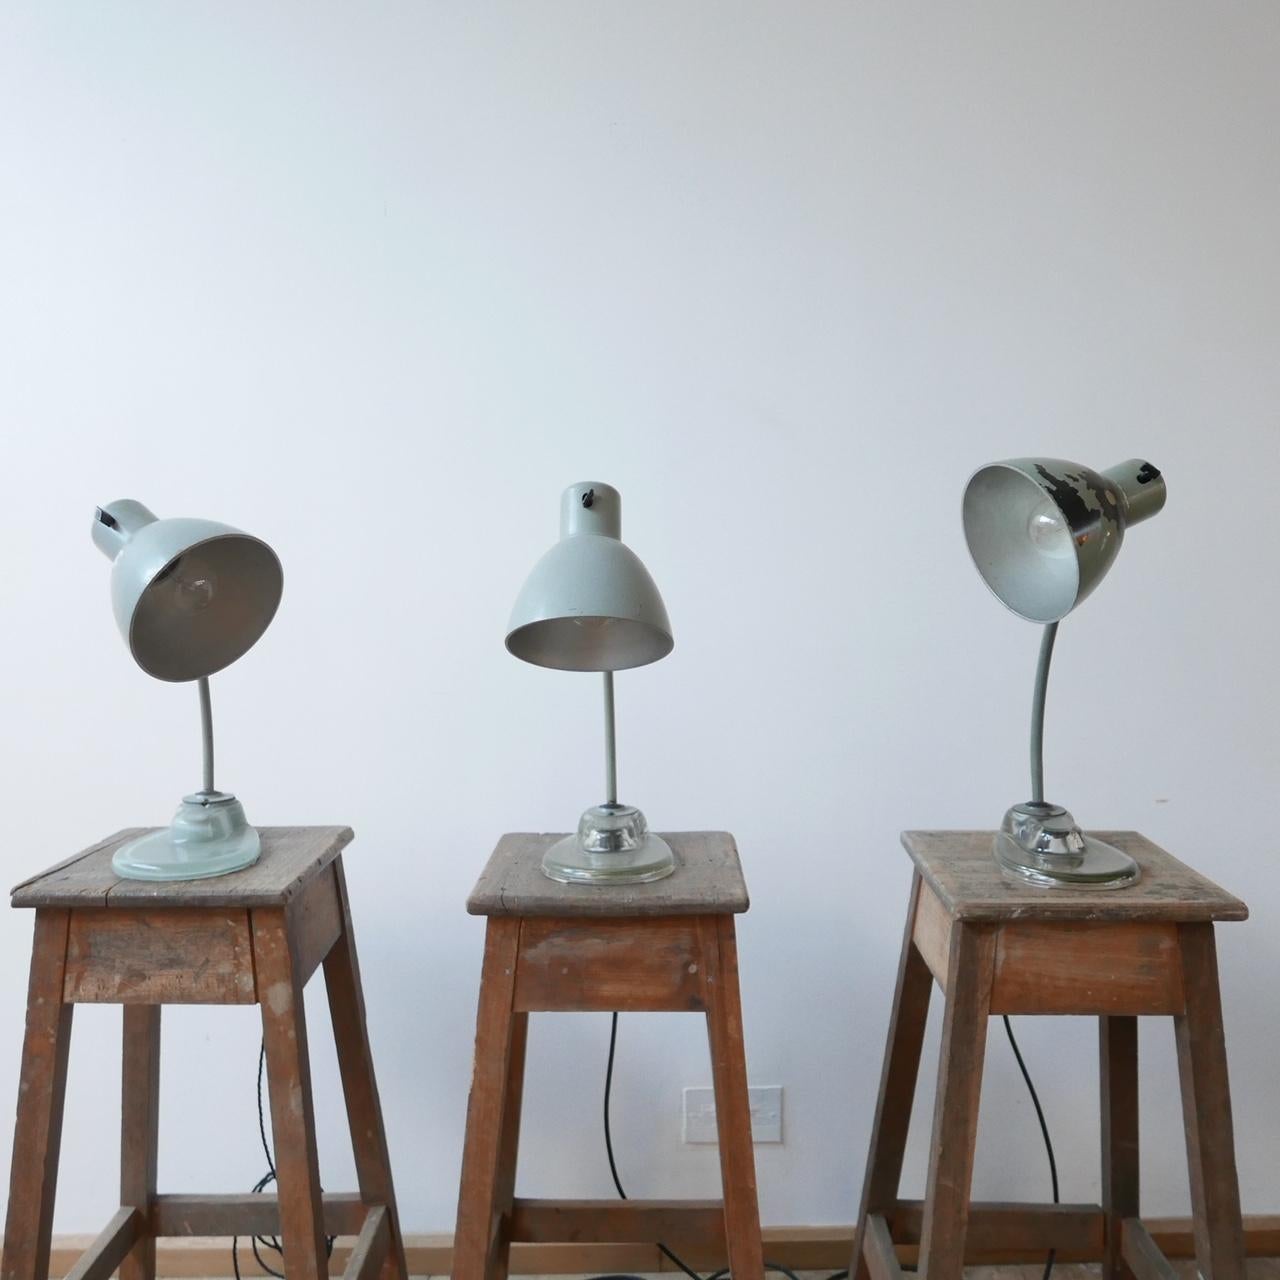 Ikonische Tisch- oder Schreibtischlampen von Kandem.

Es handelt sich um ein seltenes Modell mit Glasboden, das aus dem Zweiten Weltkrieg stammt, als Eisen für die Kriegsanstrengungen beschlagnahmt wurde.

Sockel aus gepresstem Glas, Bakelit und